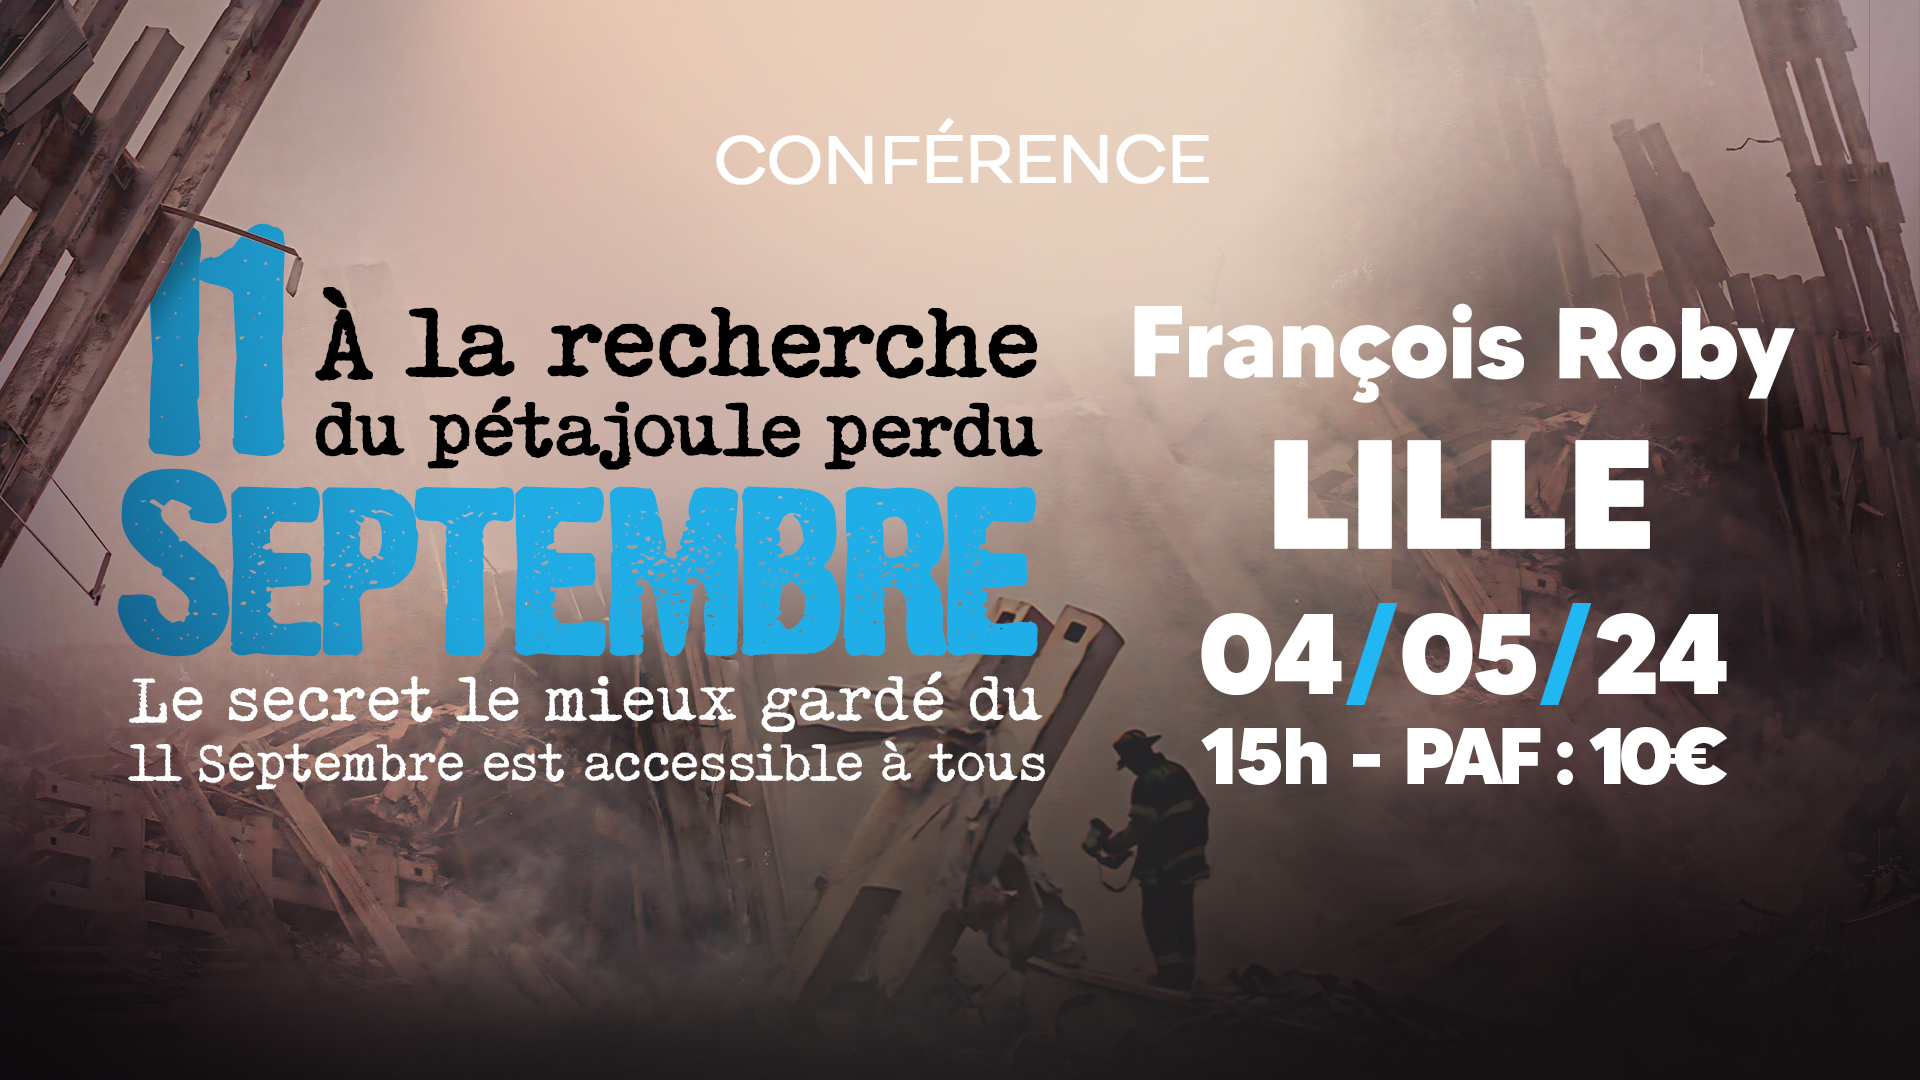 11 Septembre : à la recherche du pétajoule perdu – Conférence de François Roby à Lille